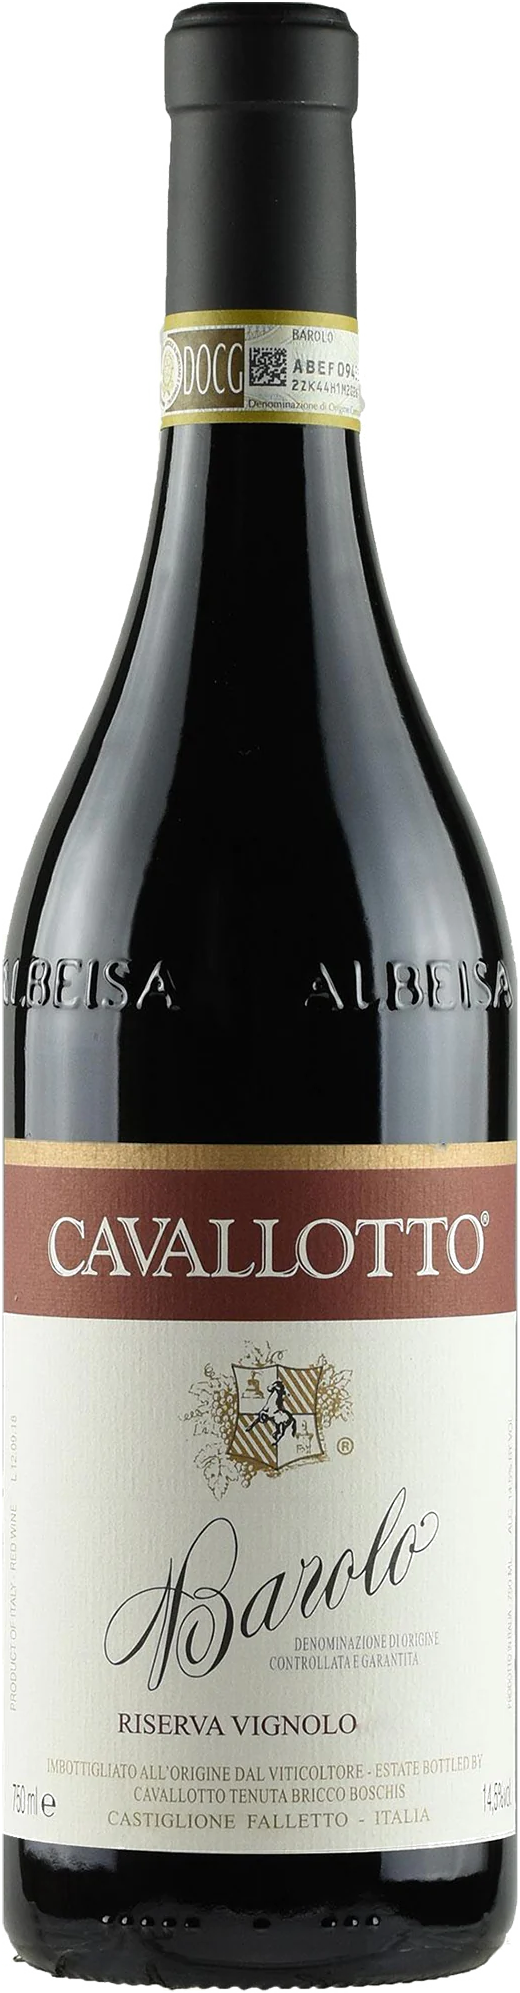 Cavallotto Barolo Riserva Vignolo 2016 750ml